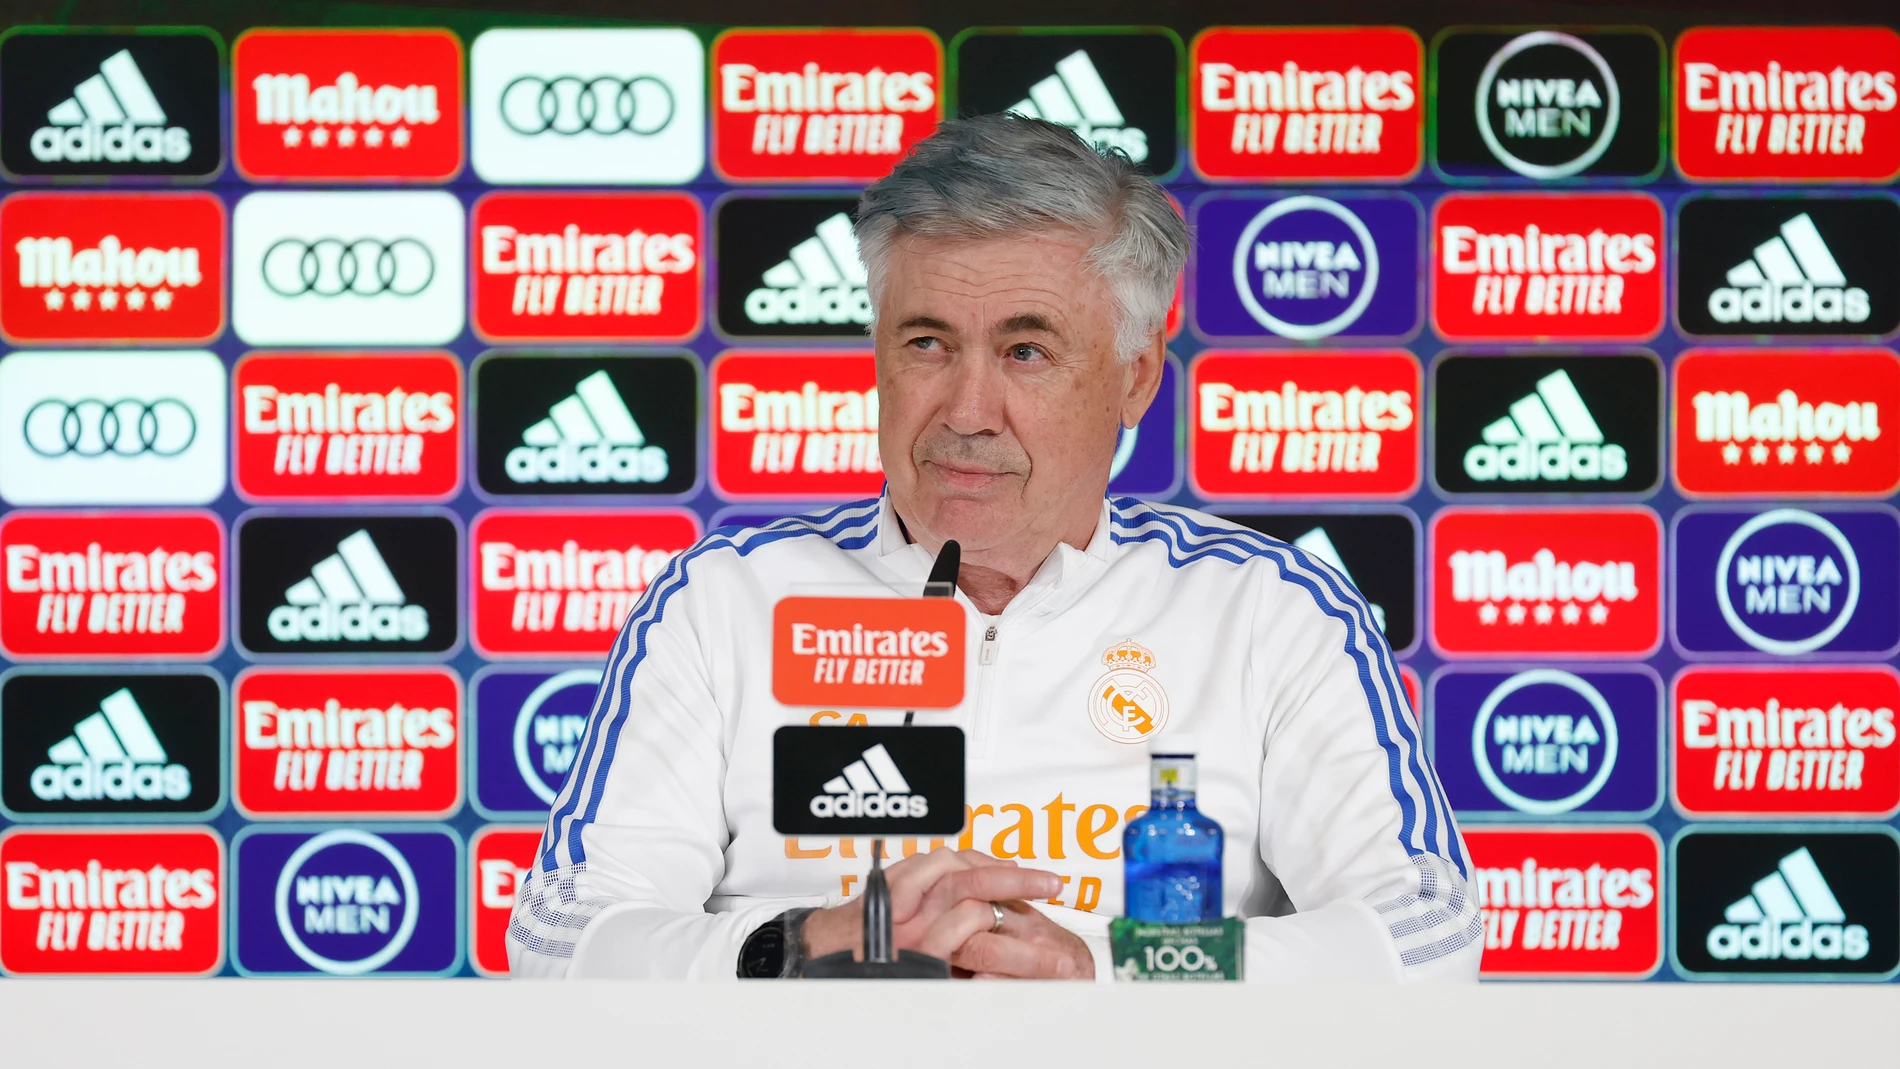 El entrenador del Real Madrid, Carlo Ancelotti, durante una conferencia de prensa